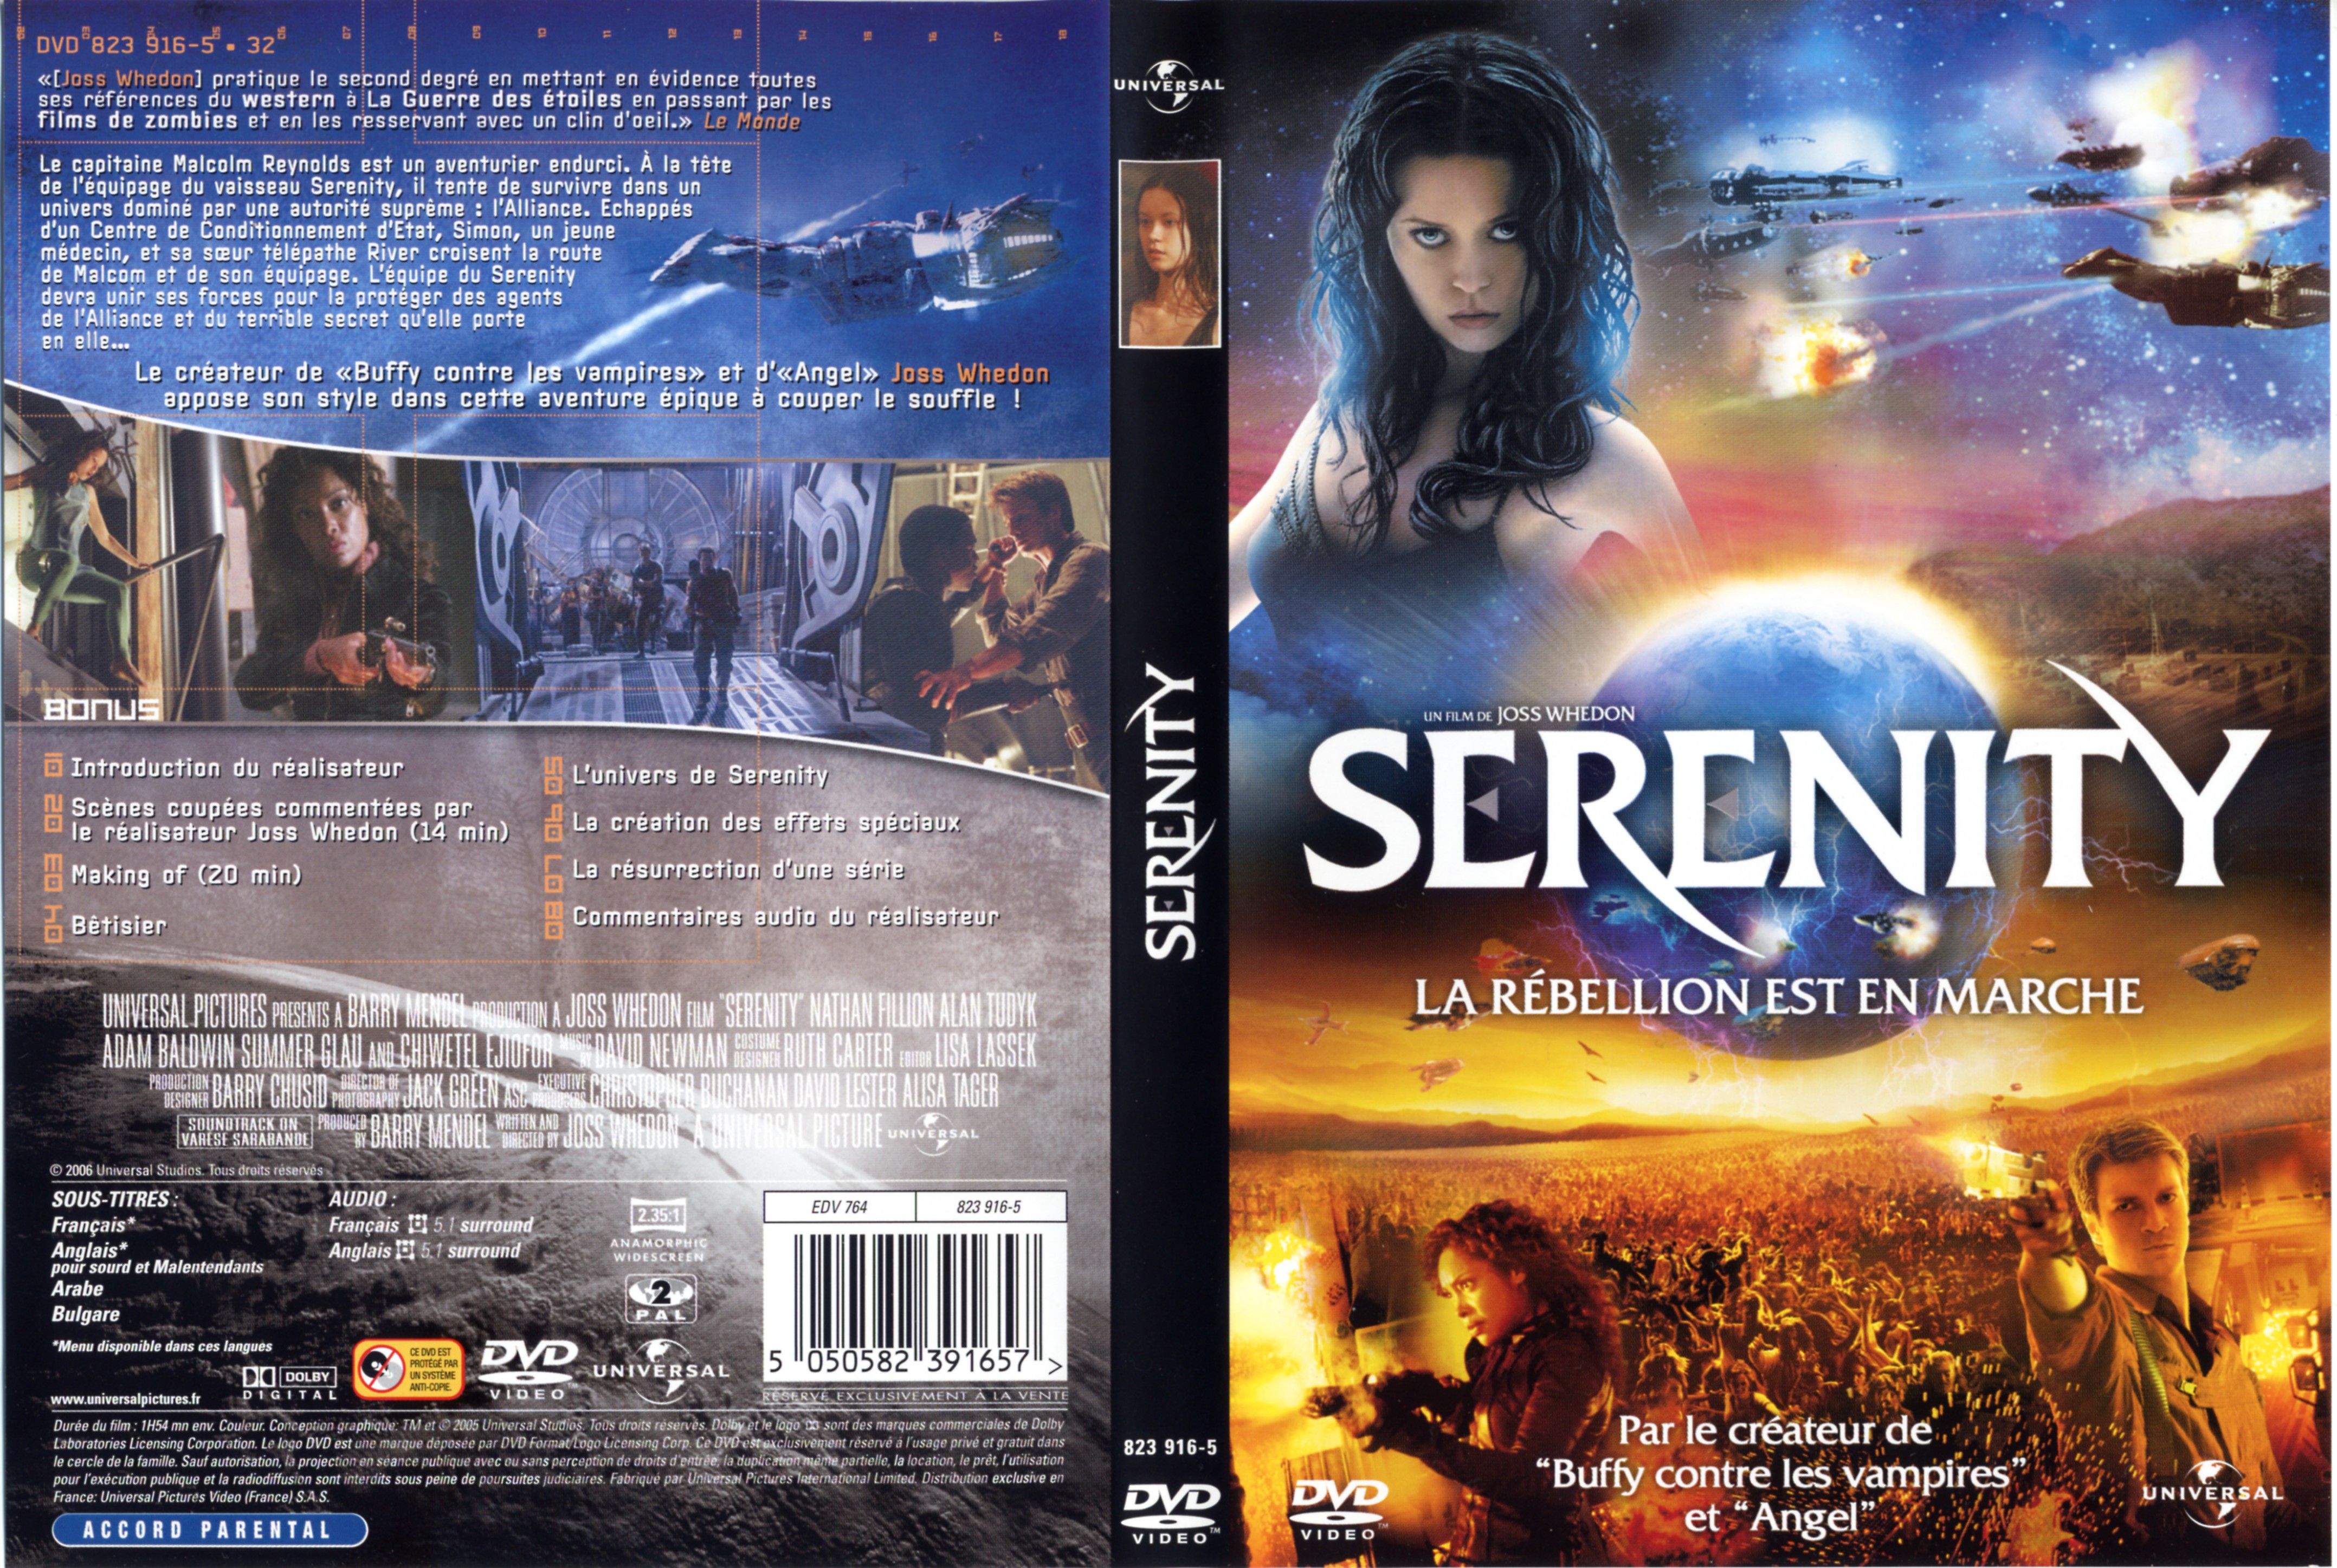 Jaquette DVD Serenity la rebellion est en marche